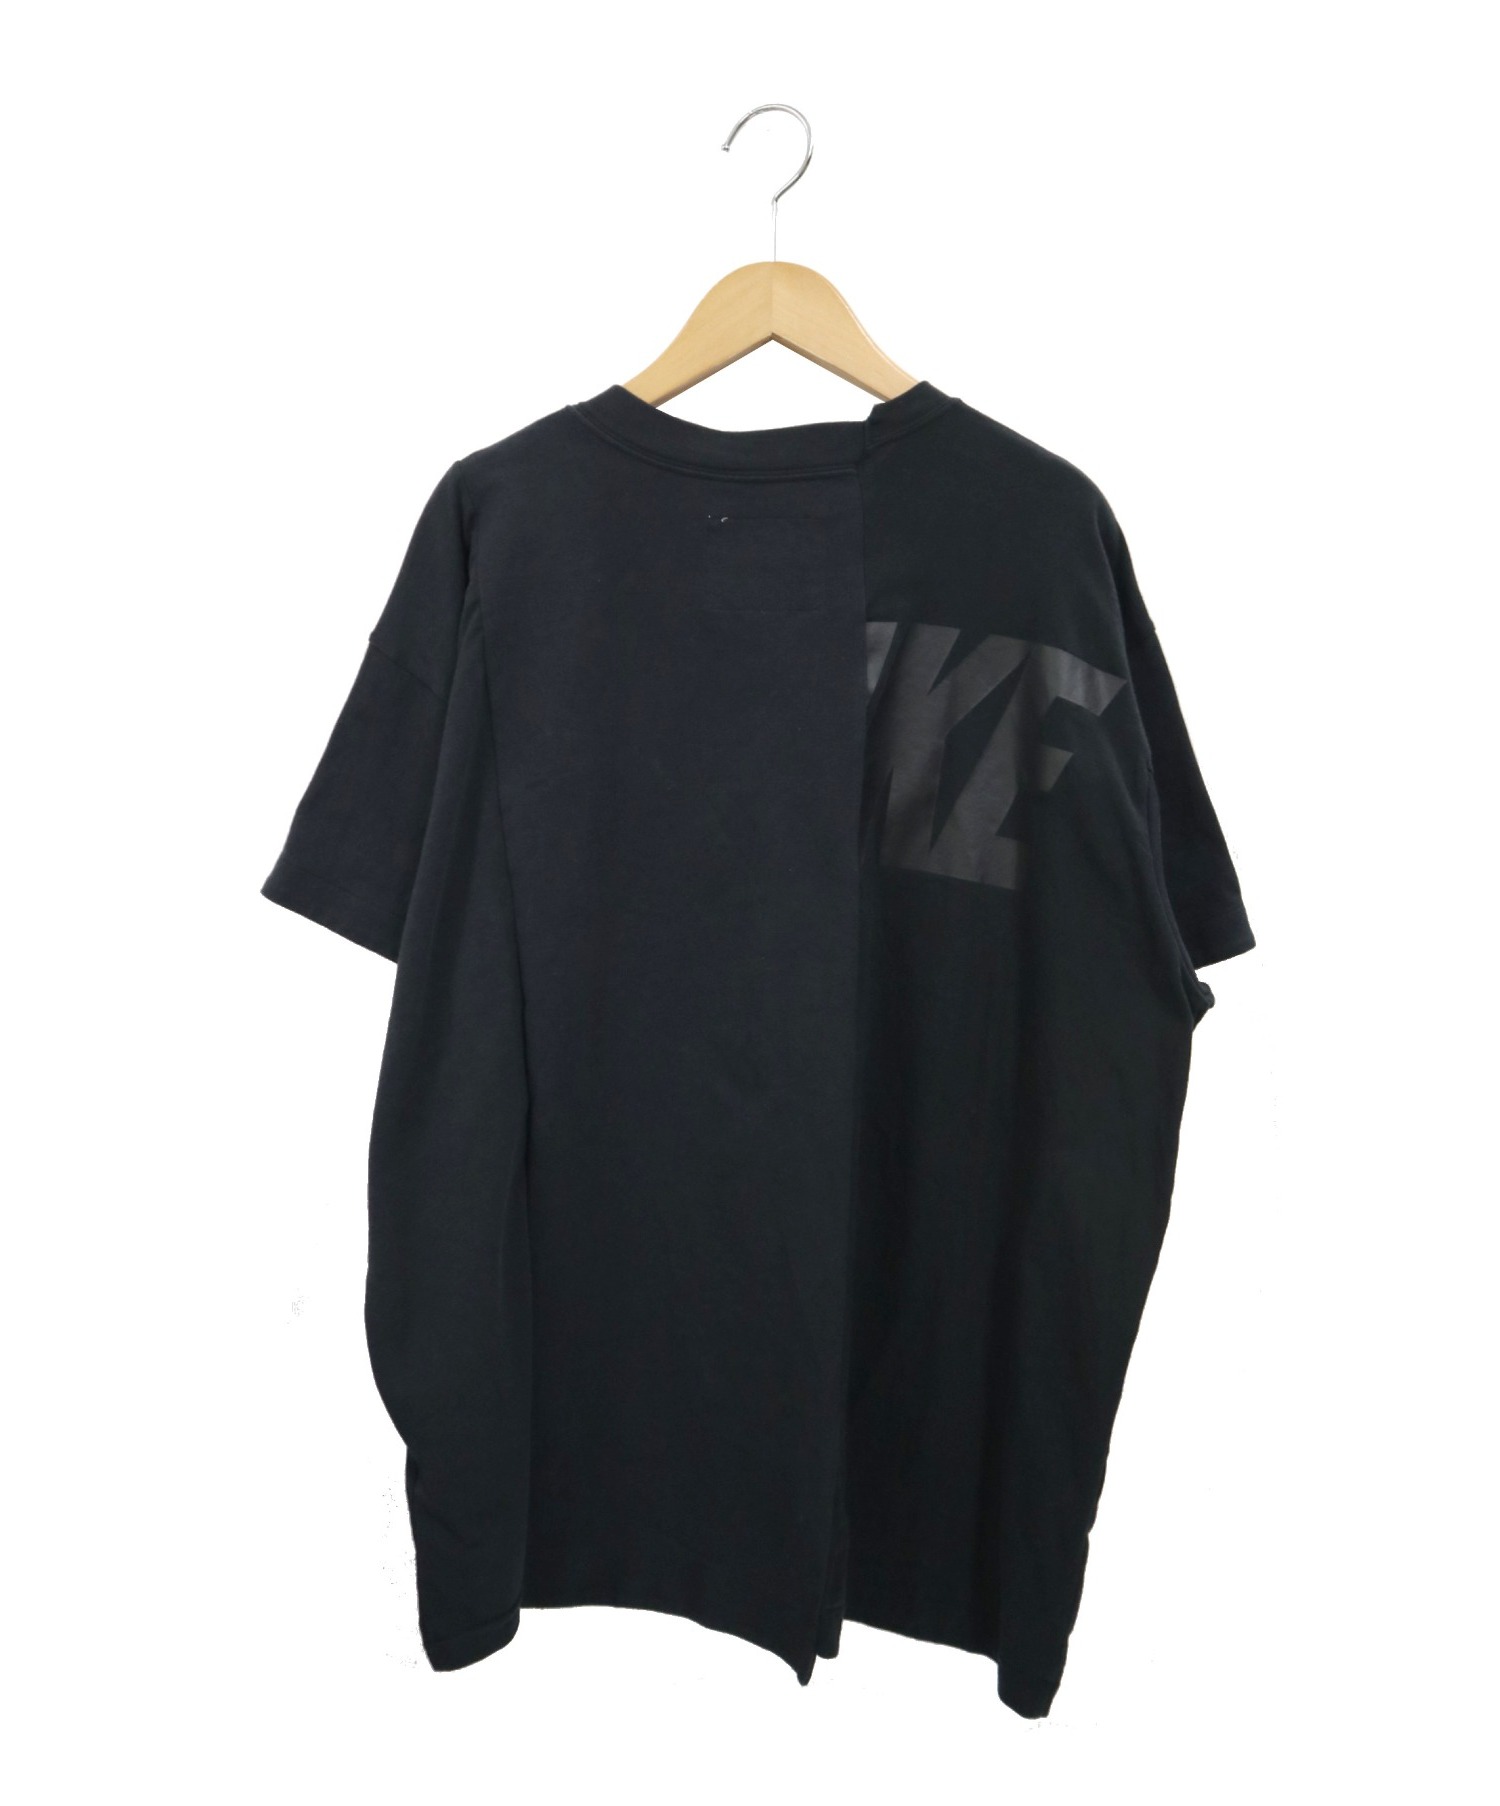 NIKE×sacai (ナイキ×サカイ) コラボ再構築ハイブリッドプリントTシャツ ブラック サイズ:L CD6311-010 NikeLab W  Nrg Ga